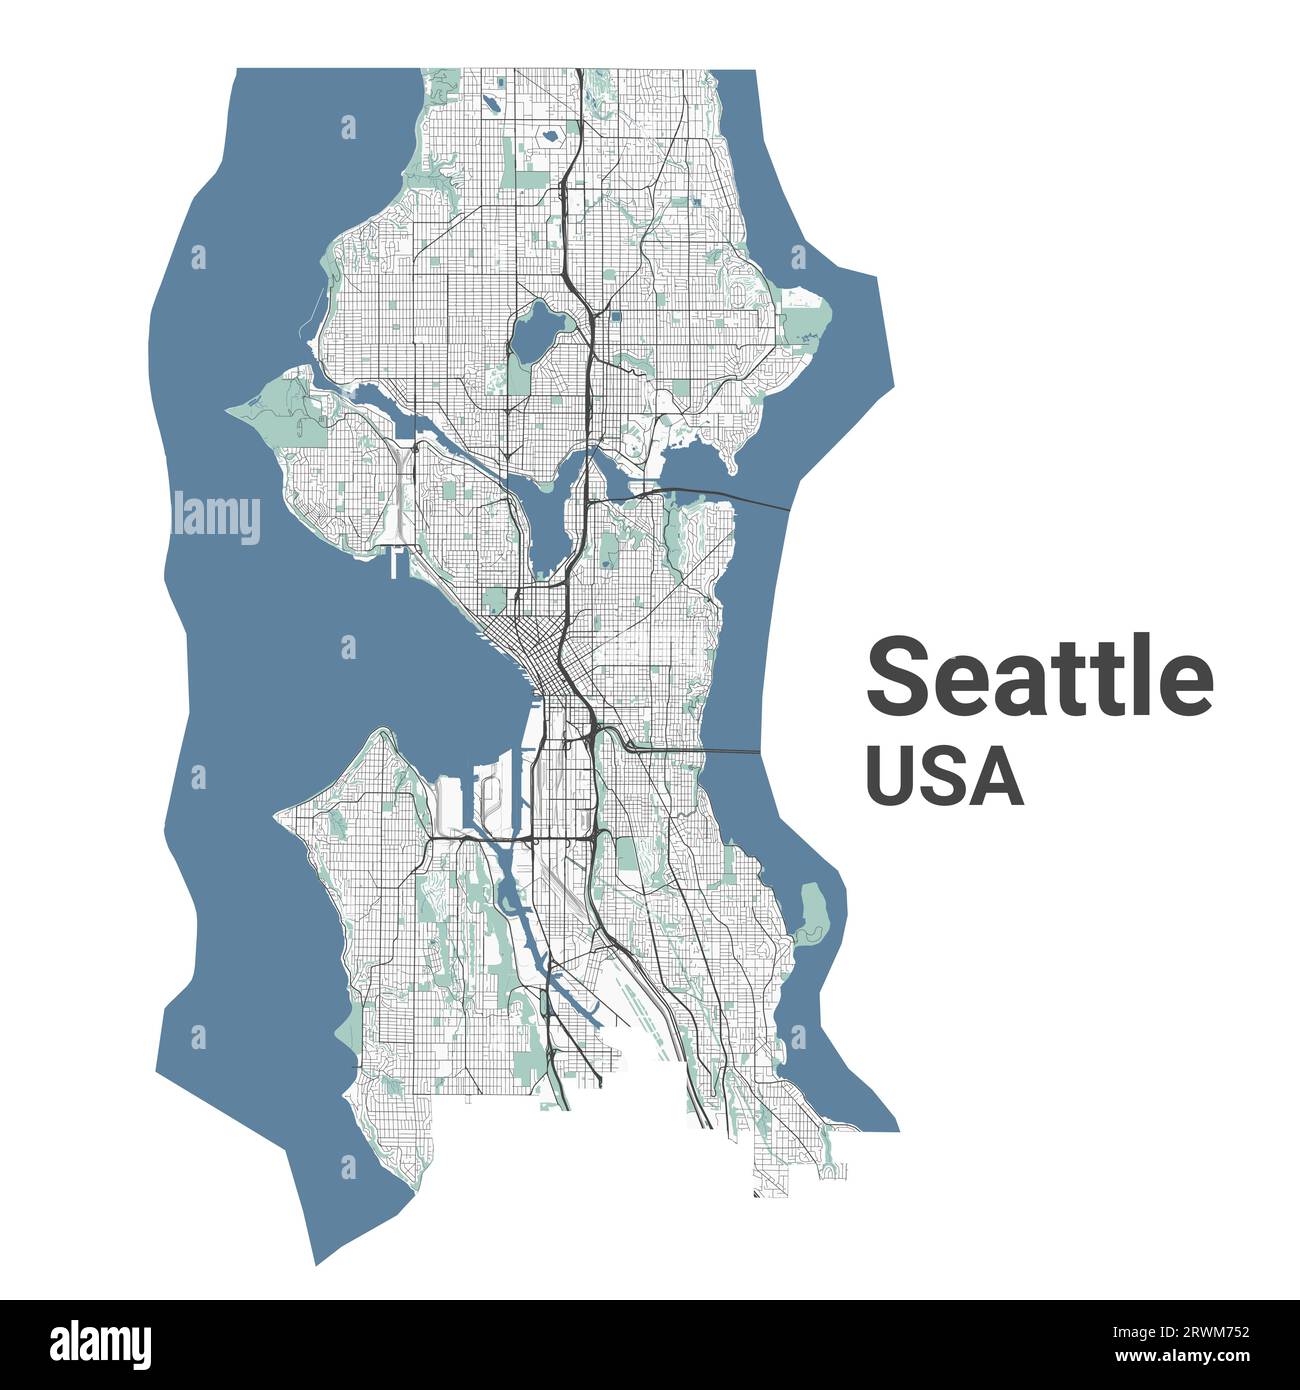 Mappa di Seattle, città americana. Mappa dell'area amministrativa comunale con fiumi e strade, parchi e ferrovie. Illustrazione vettoriale. Illustrazione Vettoriale